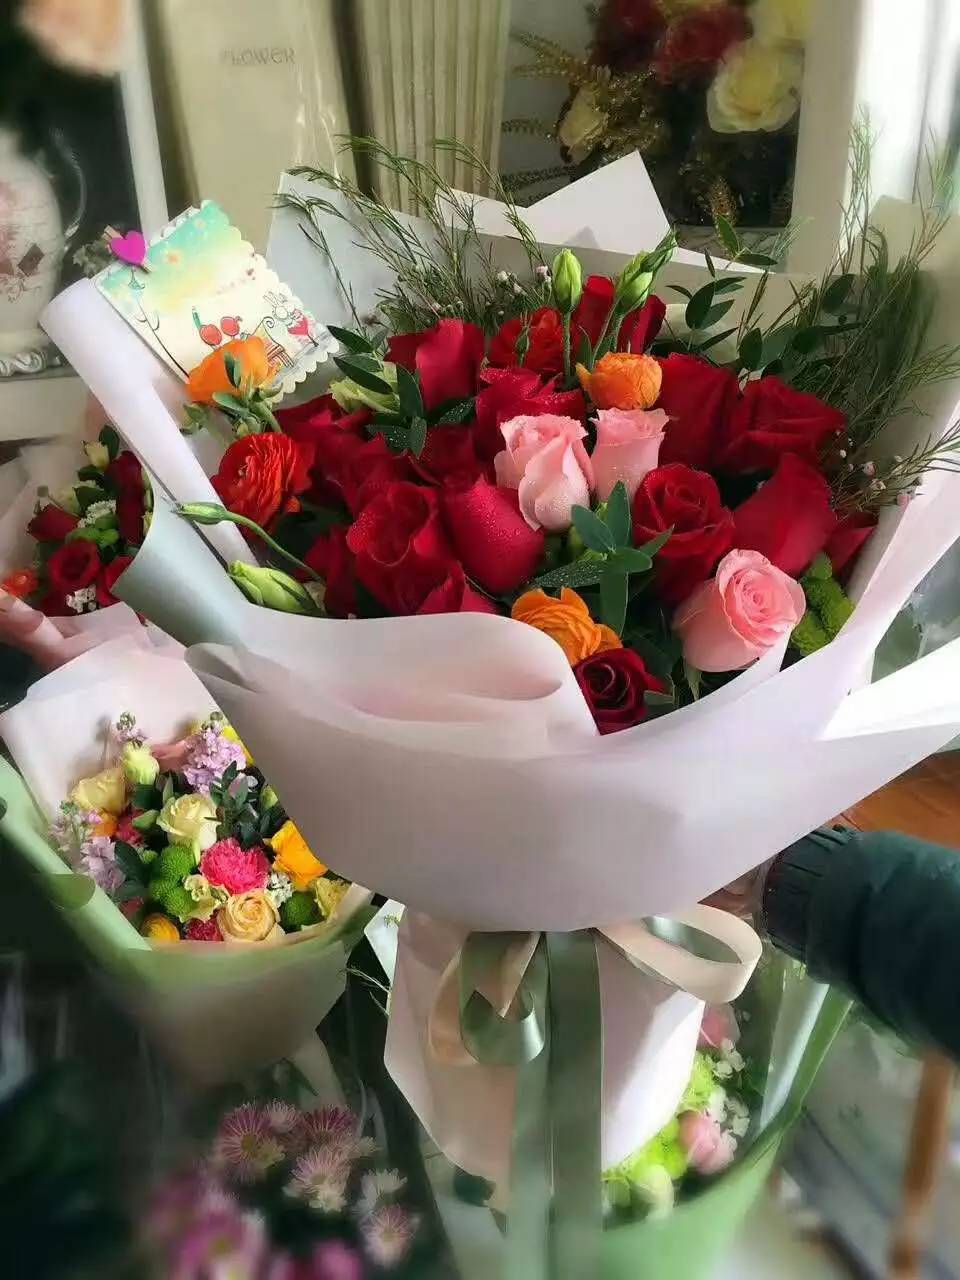 送一束美丽的鲜花给自己辛苦的爱人,感谢她为你的付出